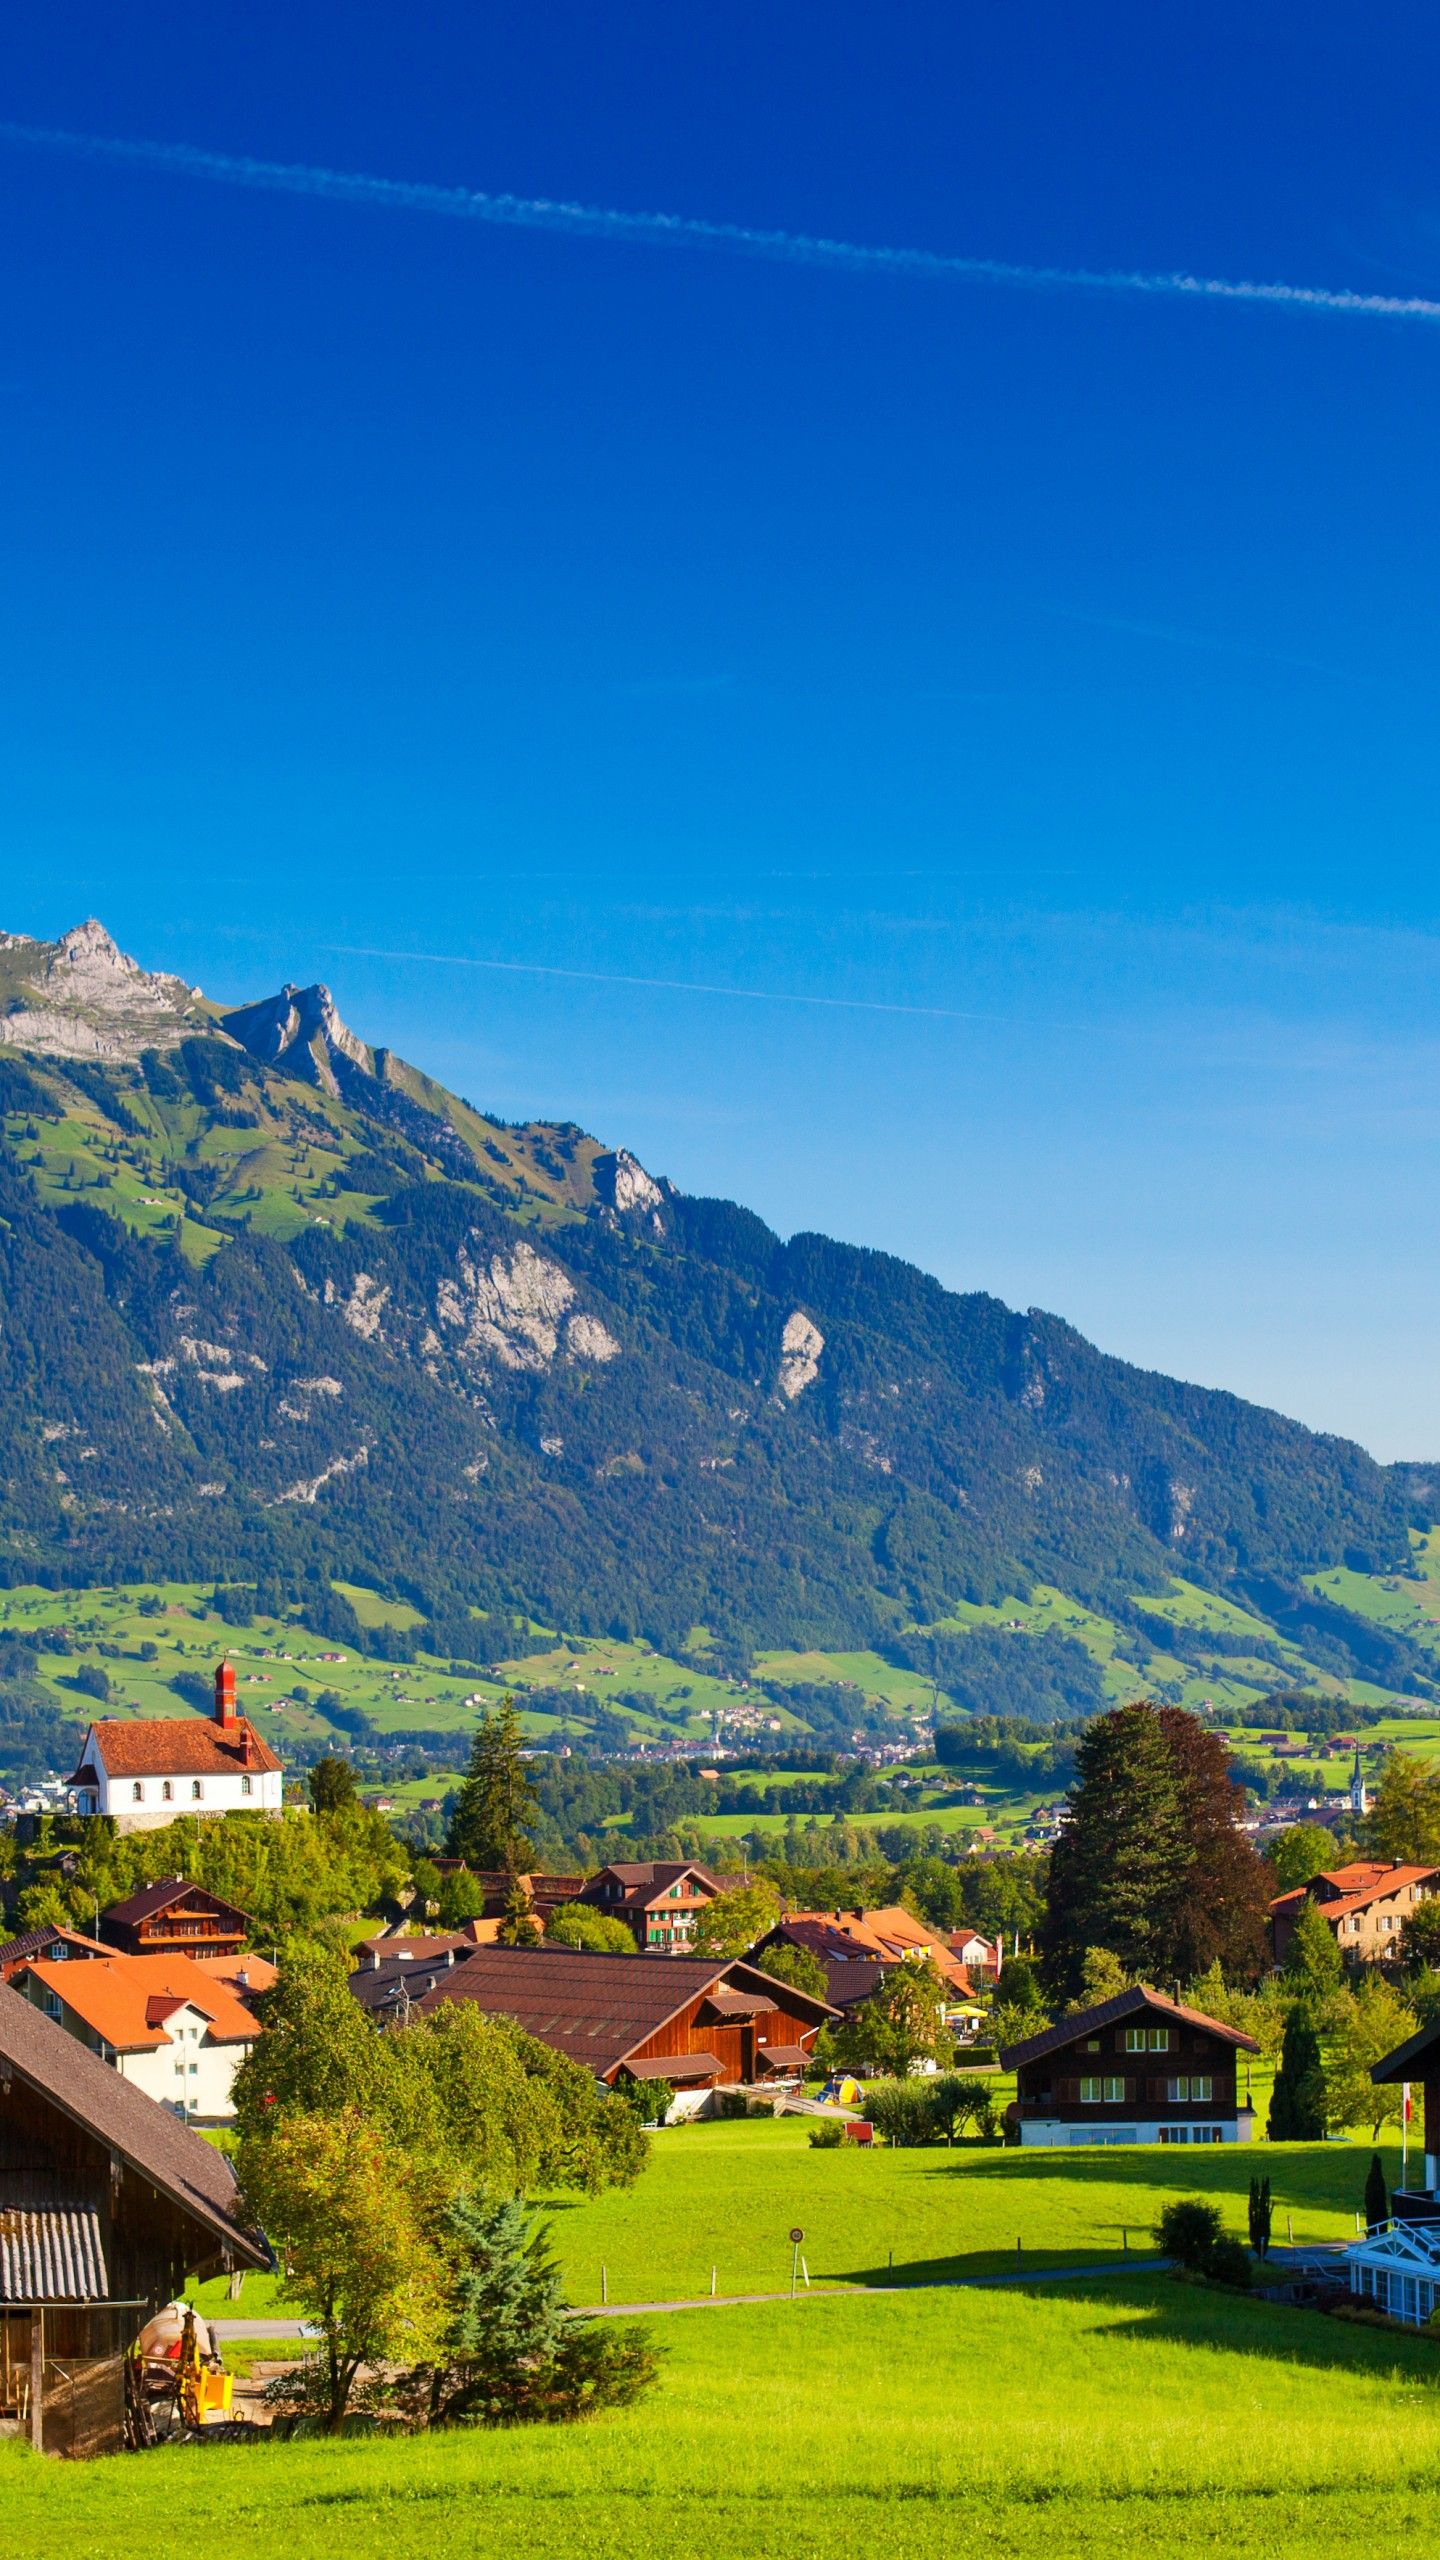 تصویر منحصر به فرد طبیعت سبز سوئیس برای اینستاگرام